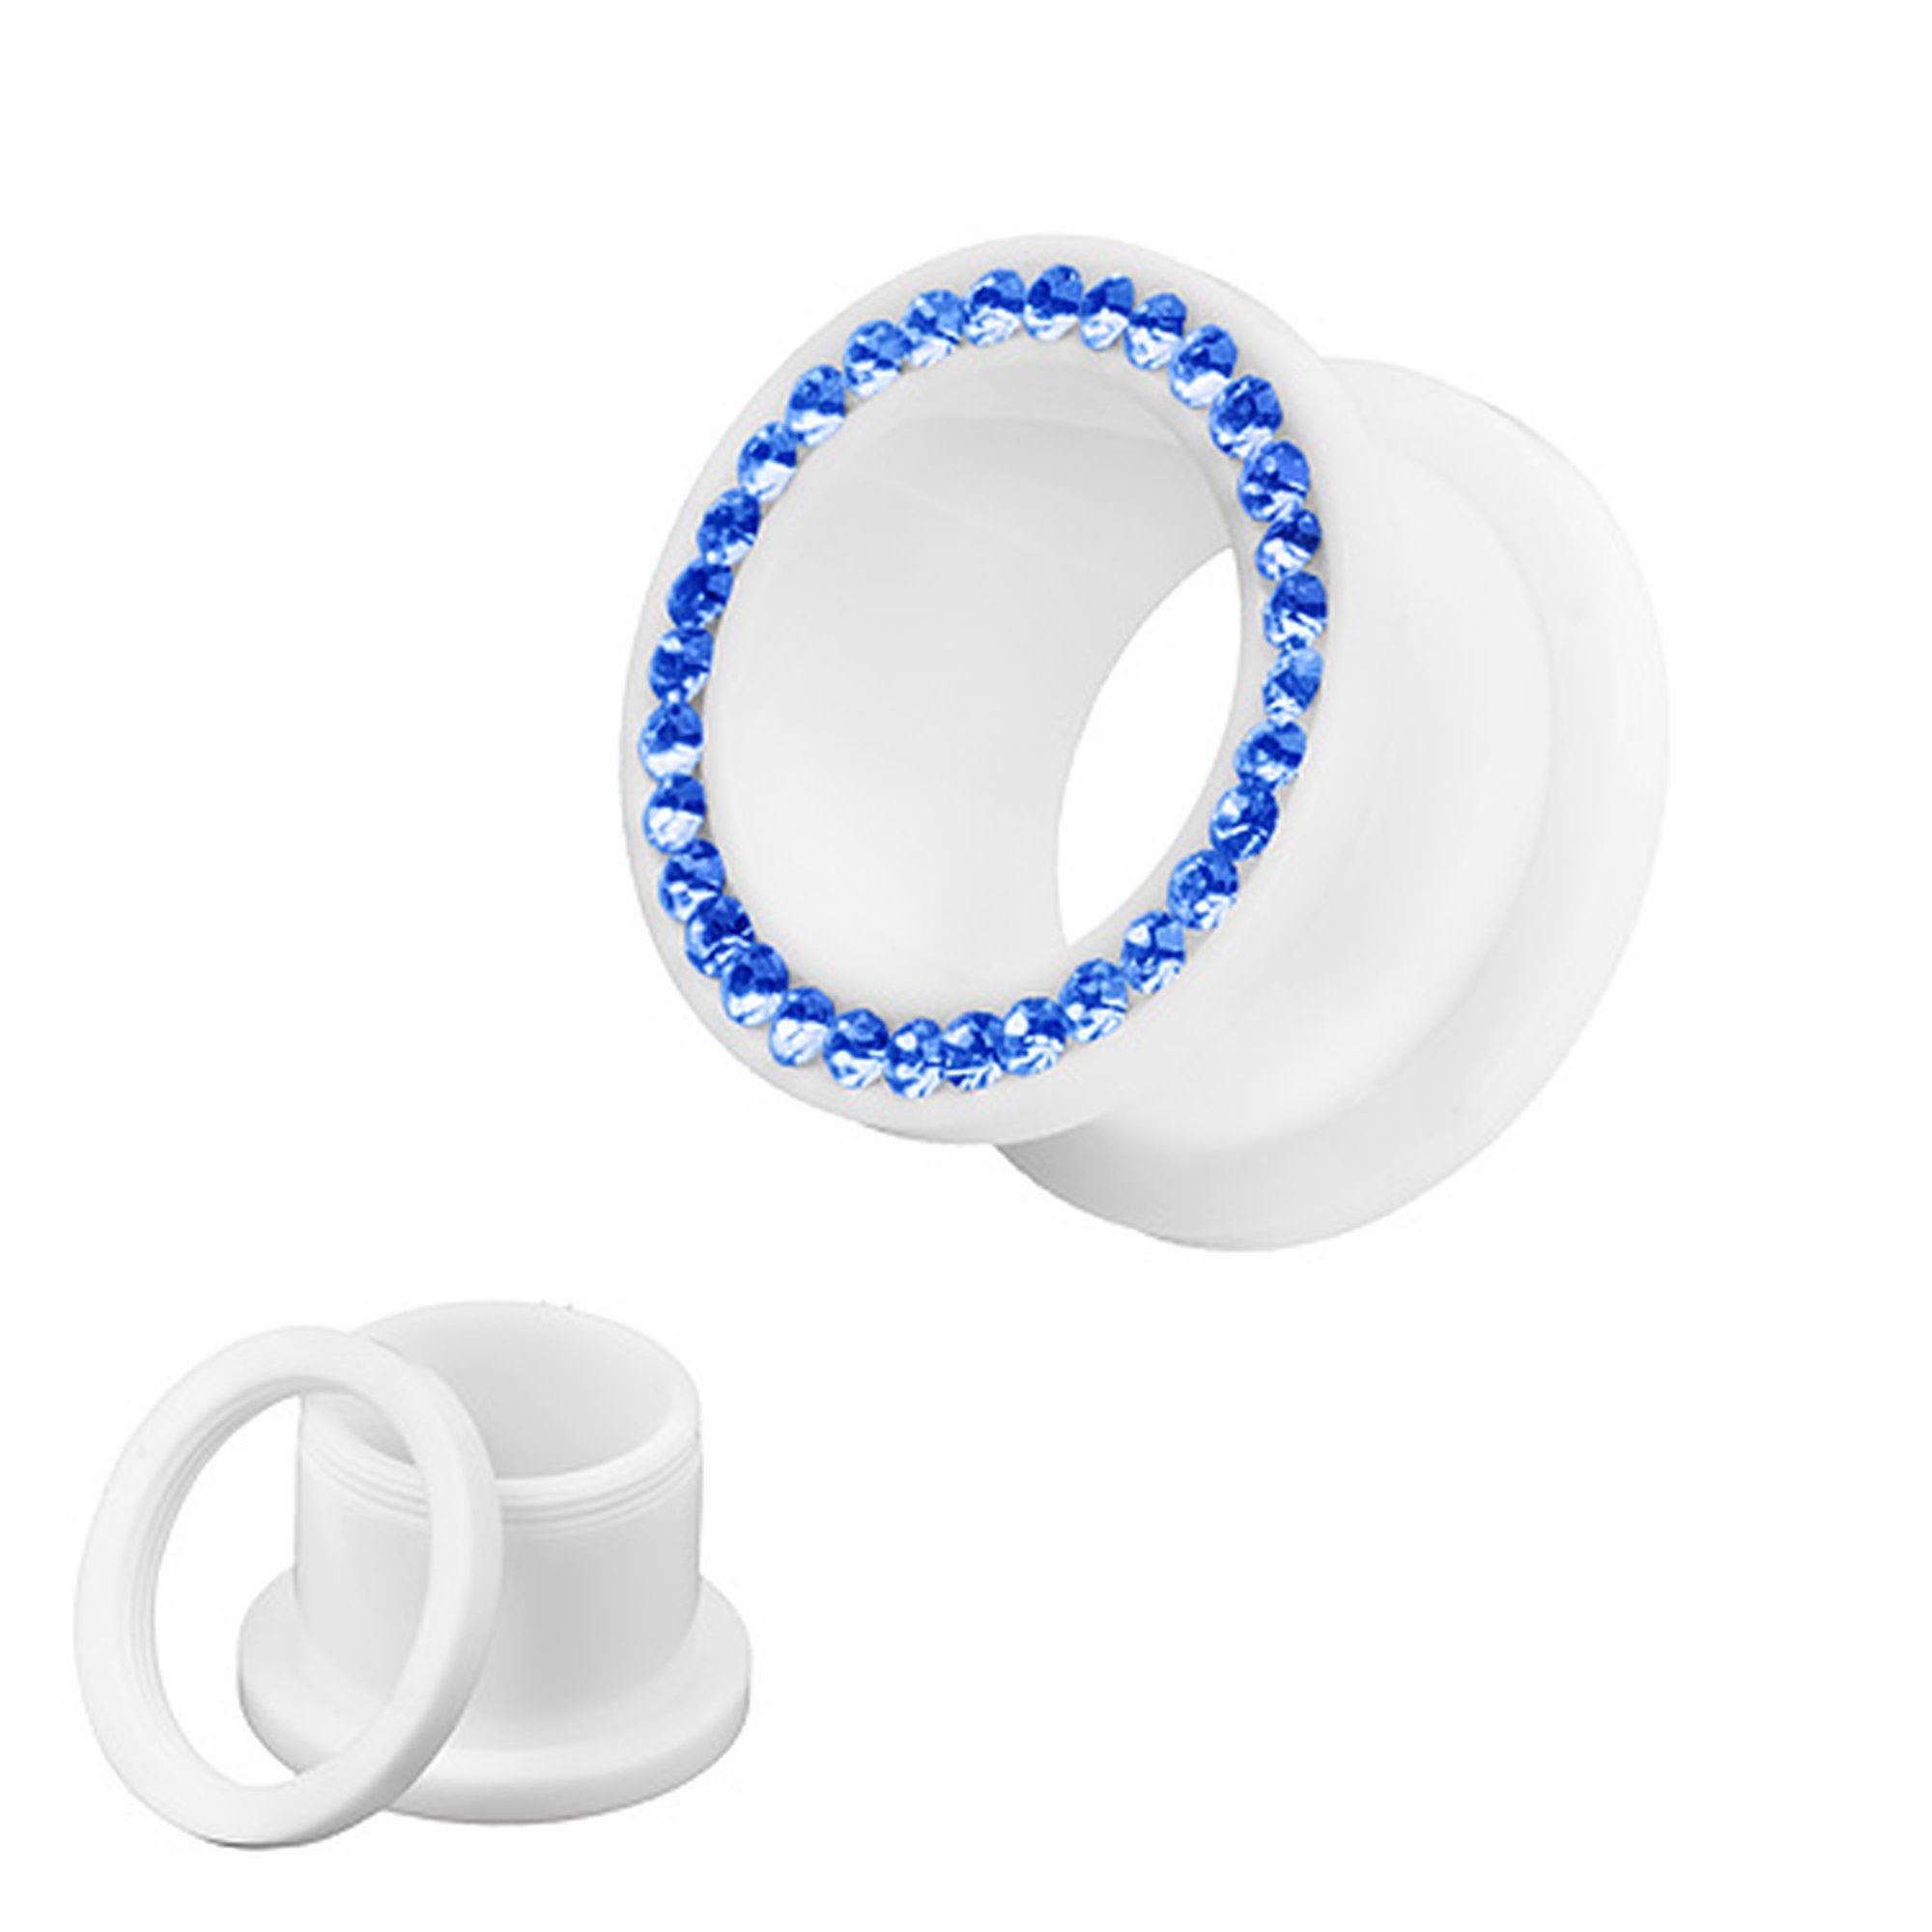 Kristallen Flesh Piercing Plug Kristallen, Taffstyle Kunststoff Schraub farbigen Plug Piercing mit Tunnel Kunststoff farbigen Ohr Blau